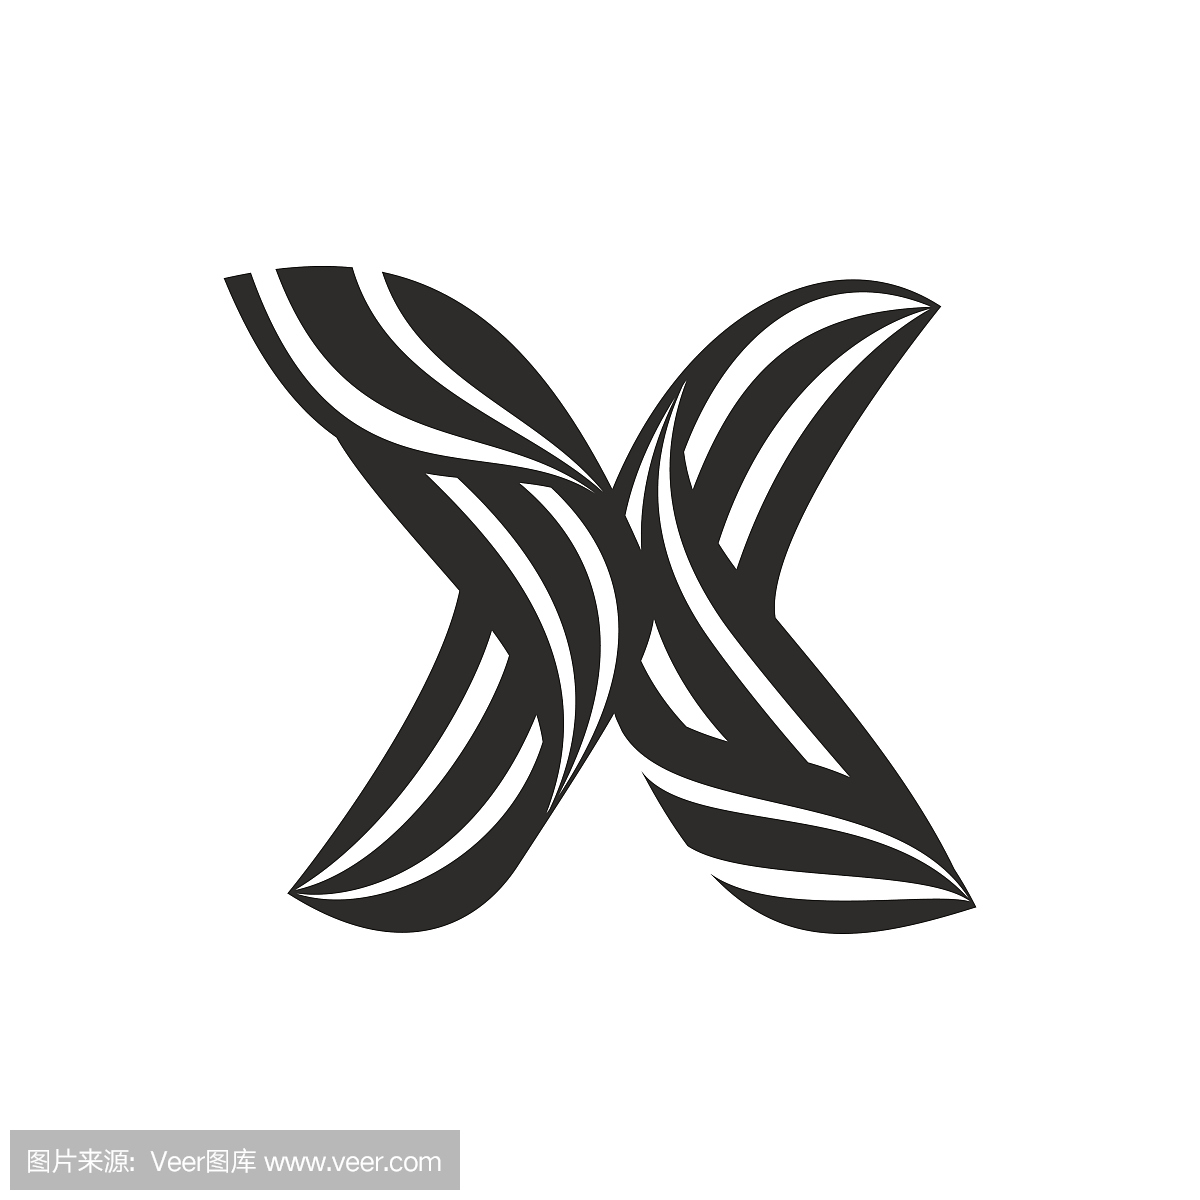 由扭曲线形成的X字母图标。